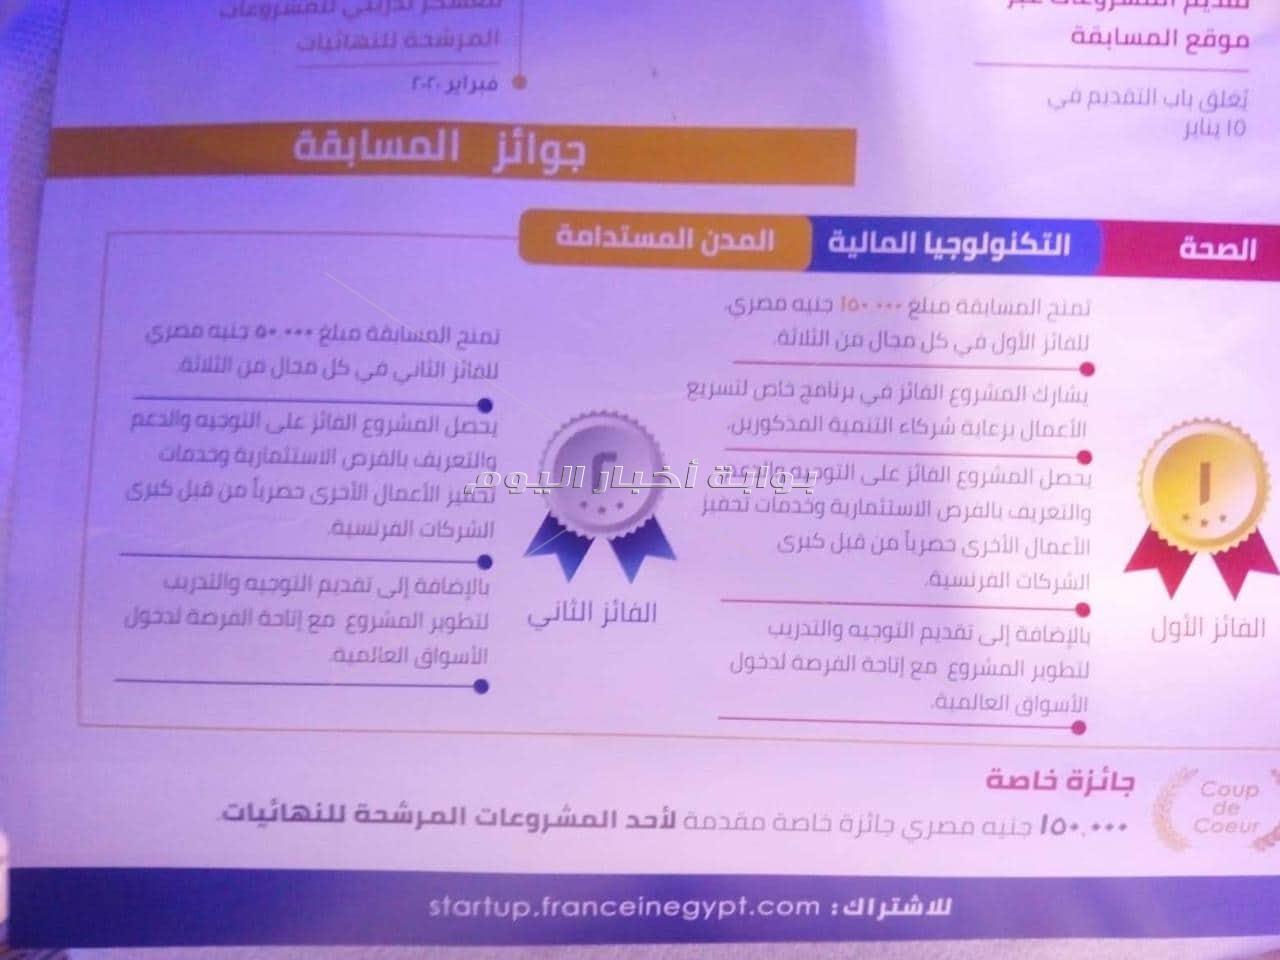 مسابقة مصرية فرنسية للشركات الناشئة في مصر